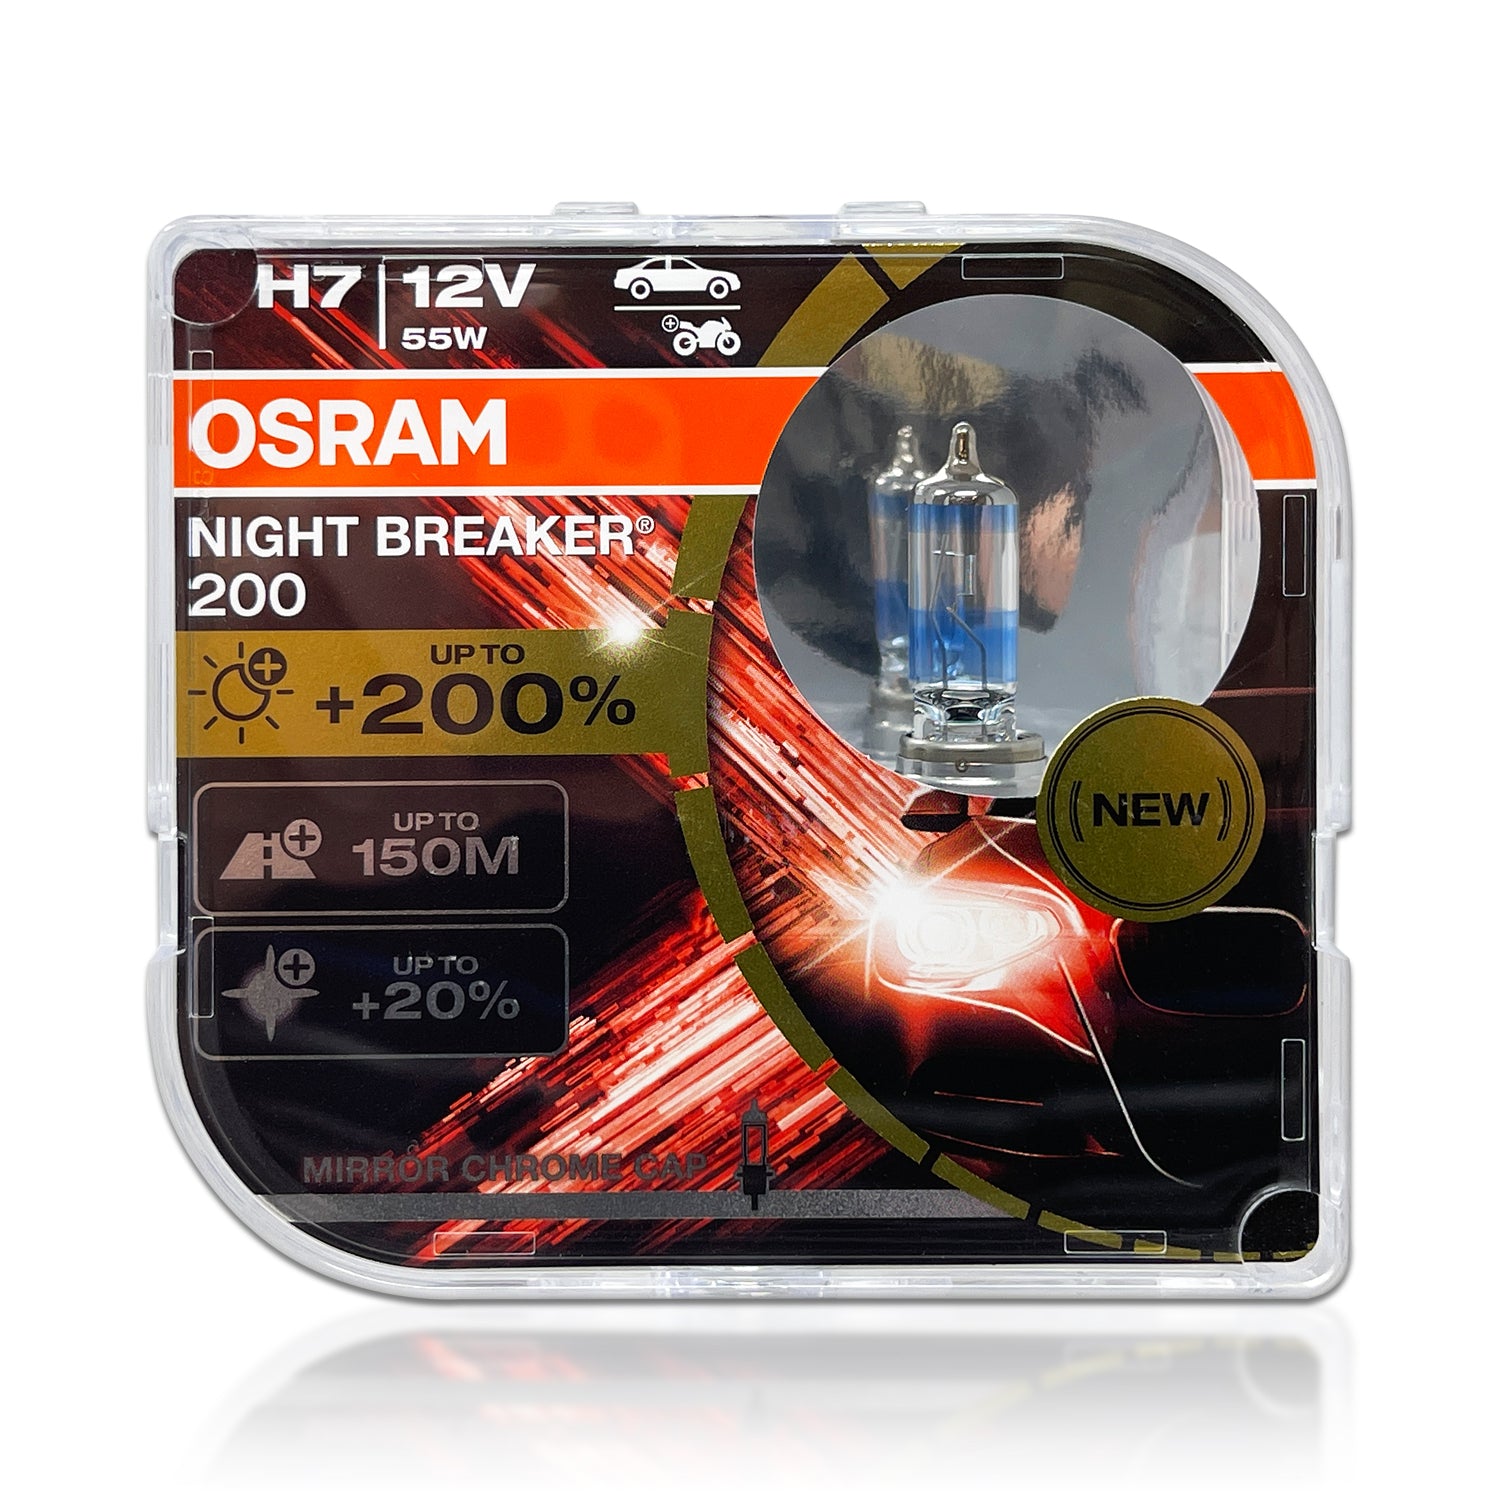 Osram H7 Night Breaker Laser LED 64210DWNB – HID CONCEPT